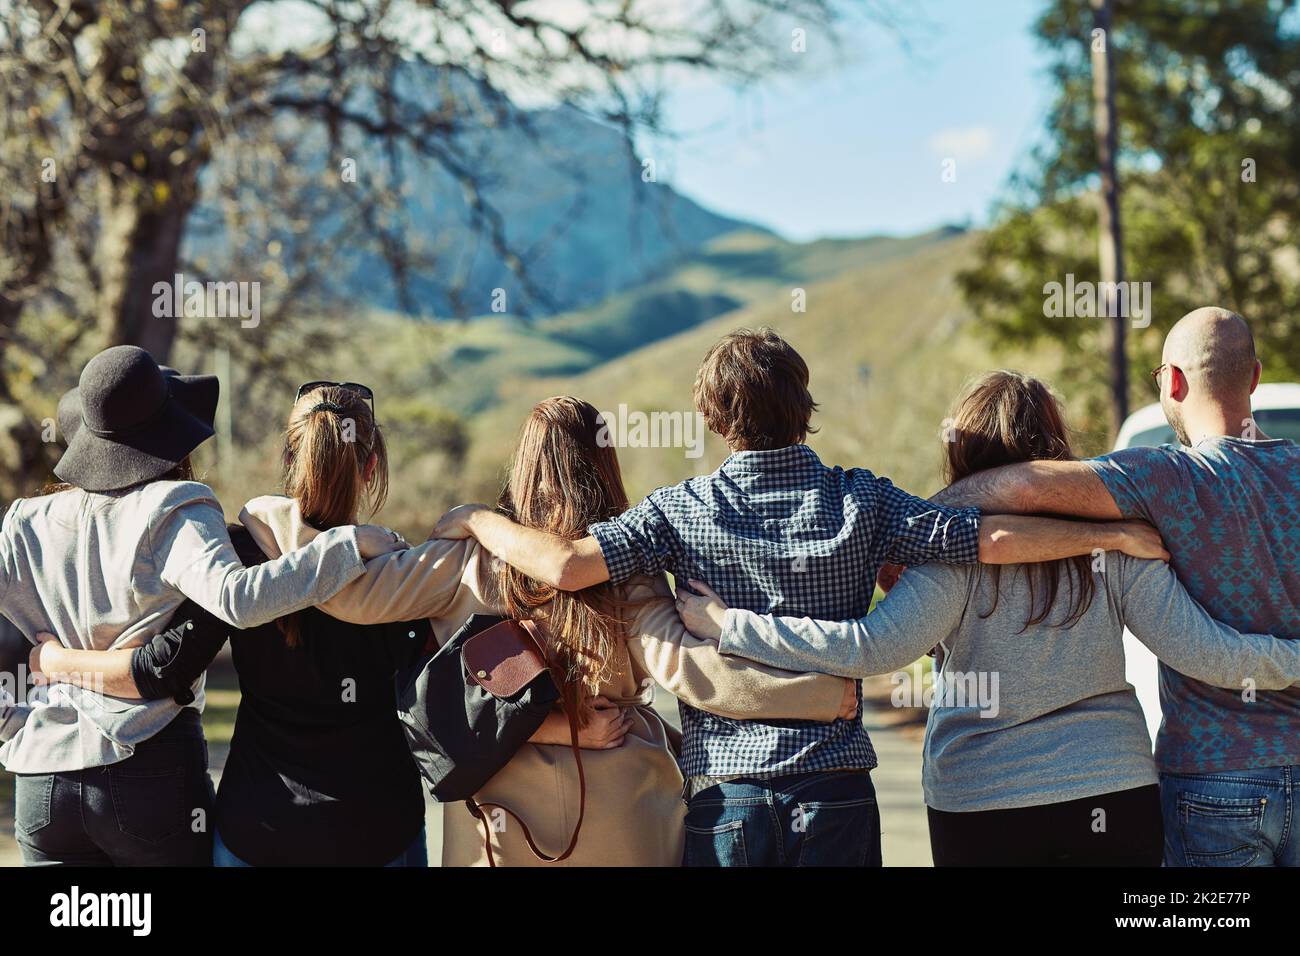 Vedere posti belli con persone belle. Ripresa retroguarata di un gruppo di amici in piedi insieme. Foto Stock